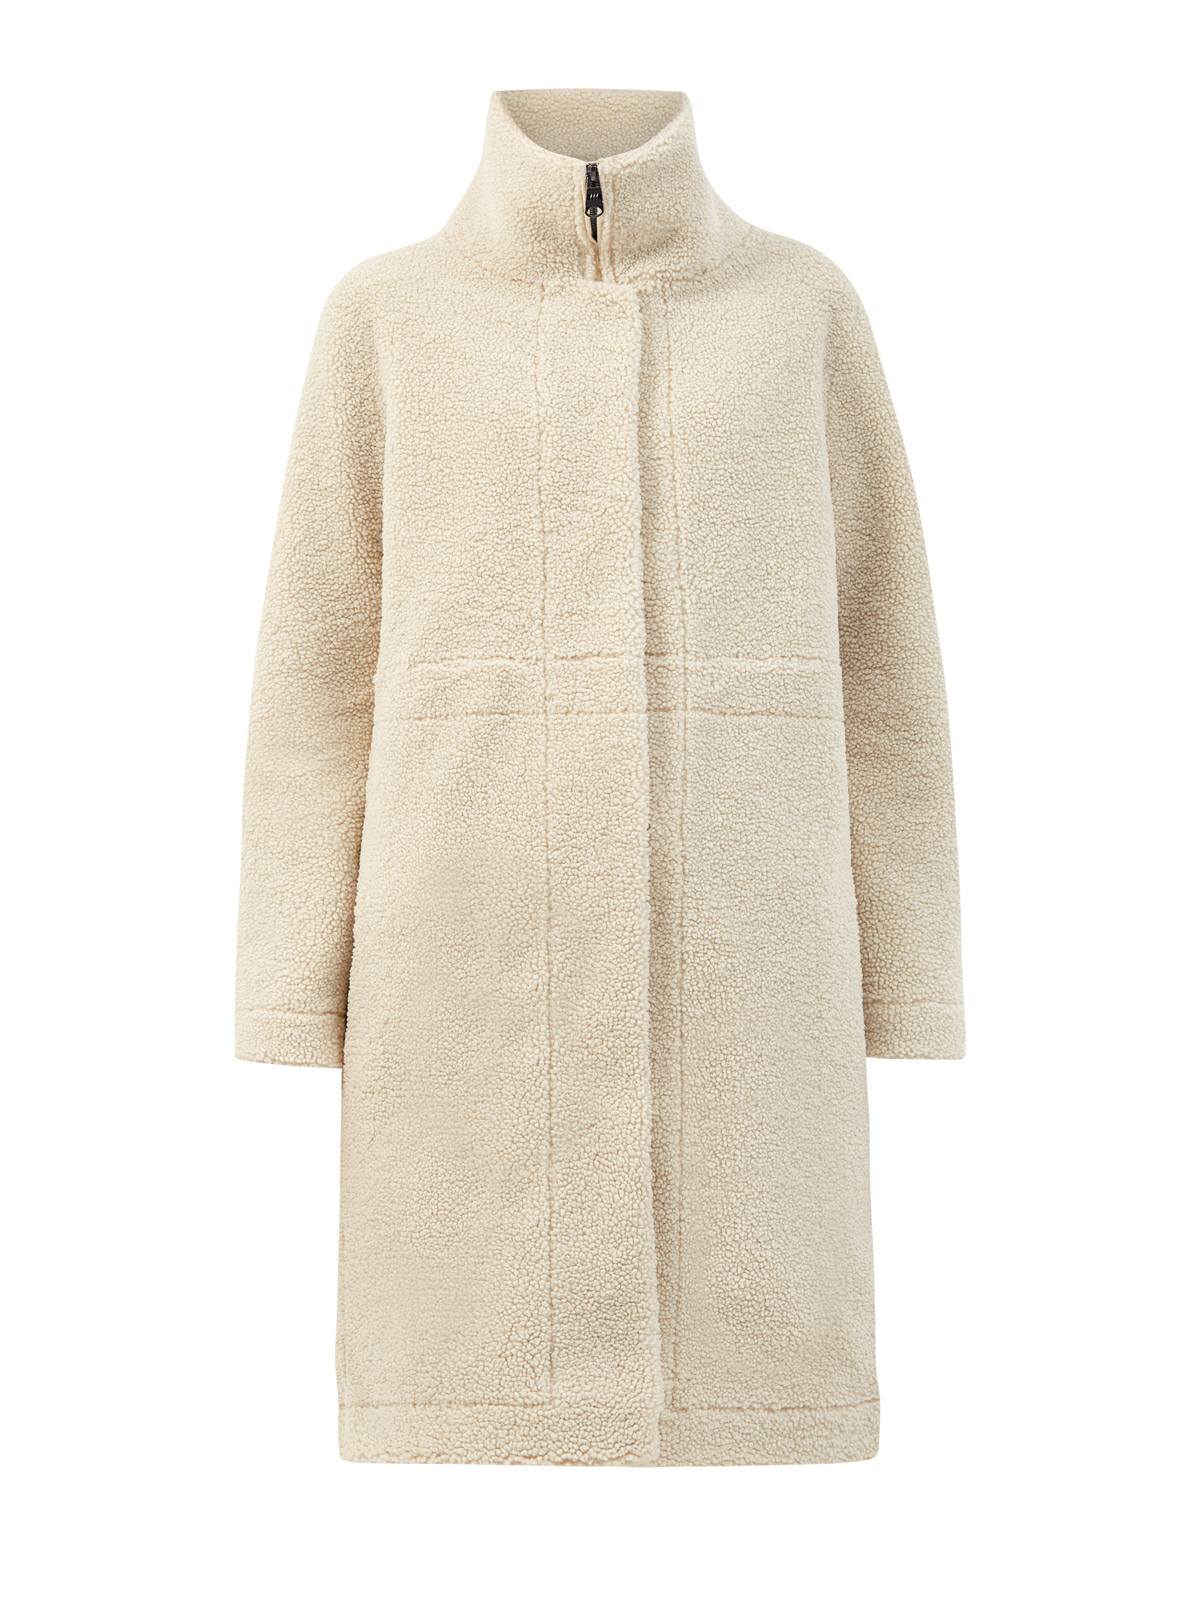 Пальто Mega из фактурного эко-меха с застежкой на молнию HETREGO, цвет бежевый, размер M;XL